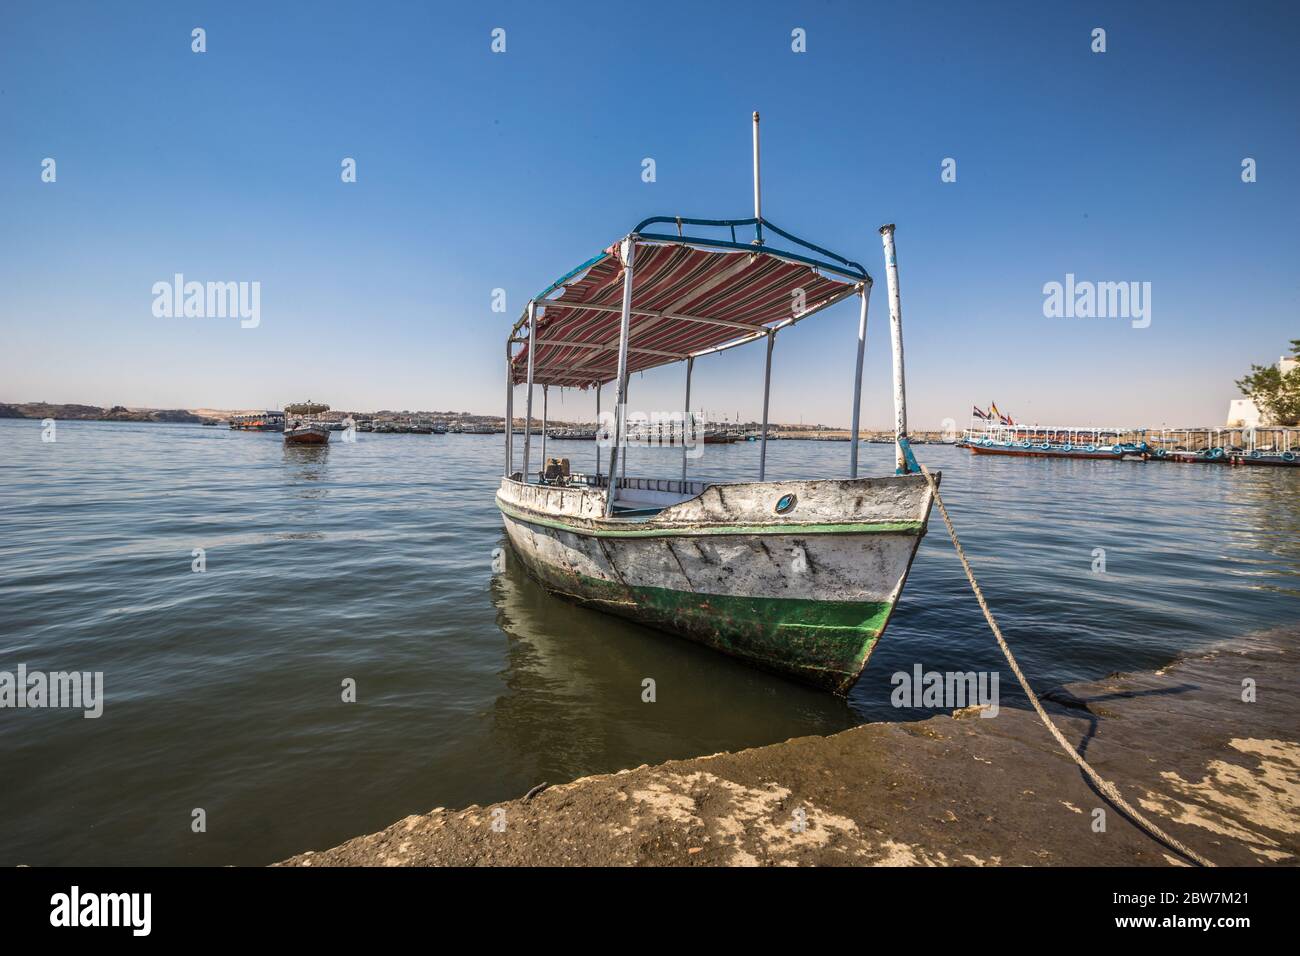 Boat in Nile River Egypt Stock Photo